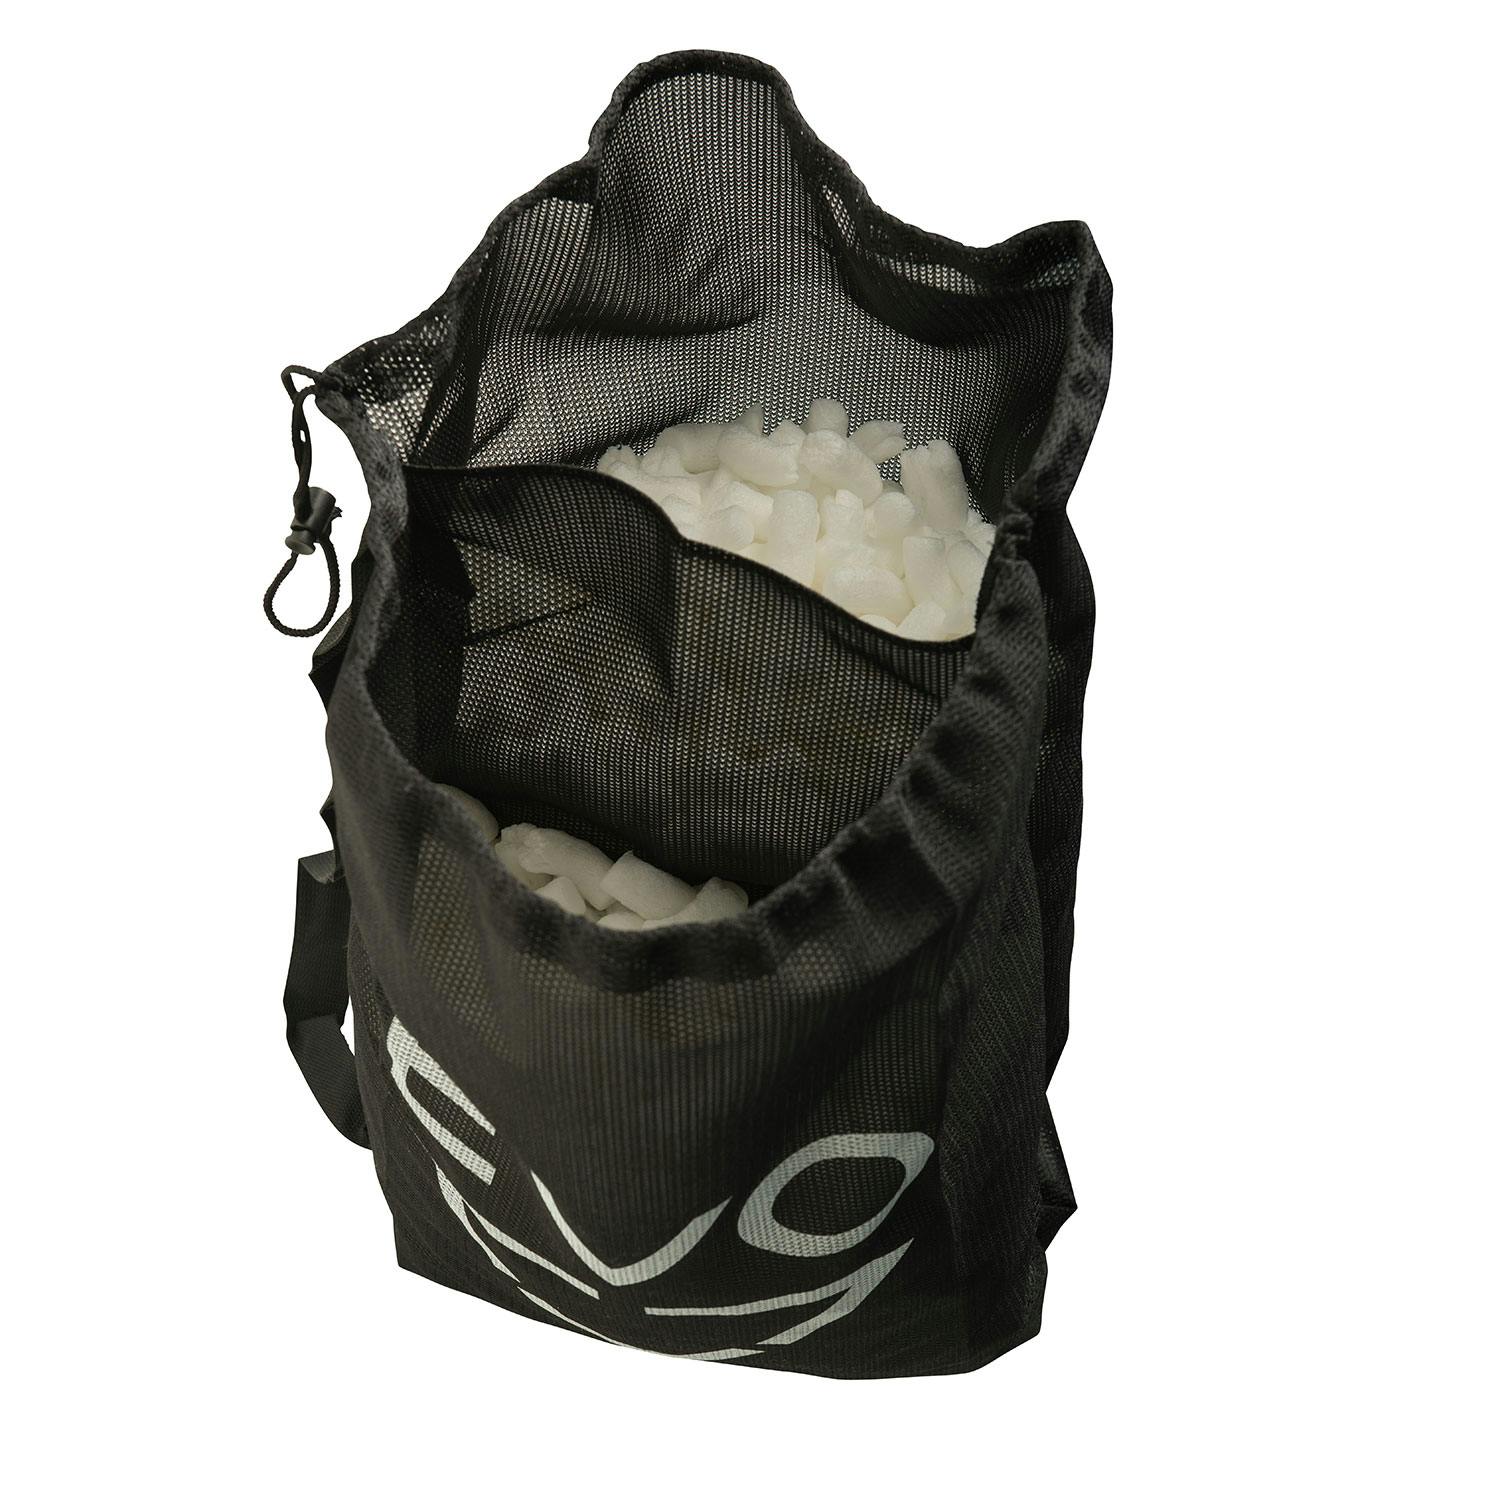 EVO Mesh Drawstring Shoulder Bag Open - Black